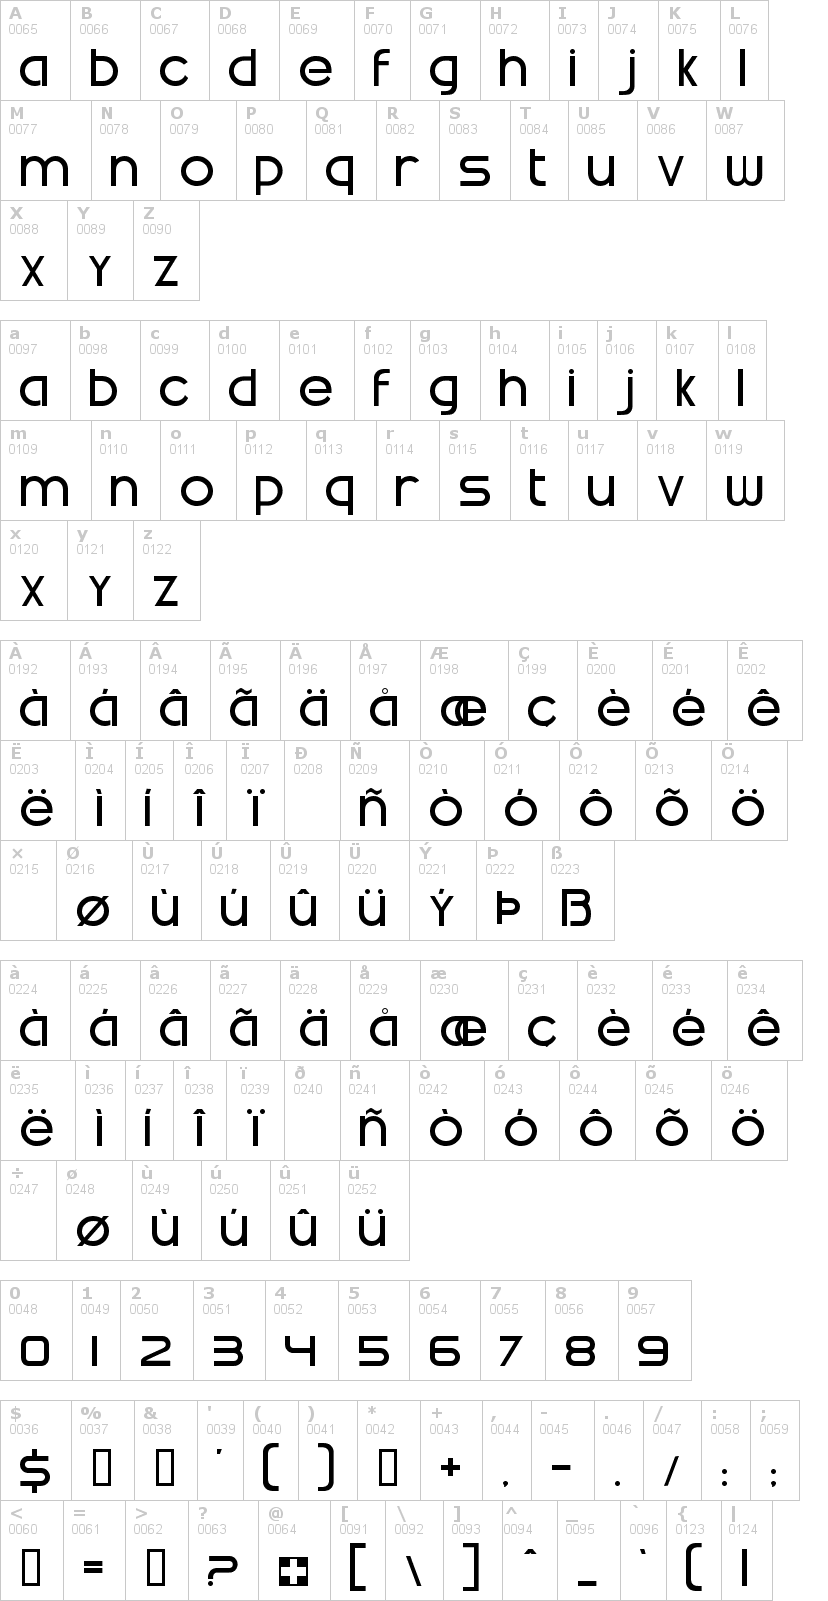 Lettere dell'alfabeto del font swatch con le quali è possibile realizzare adesivi prespaziati